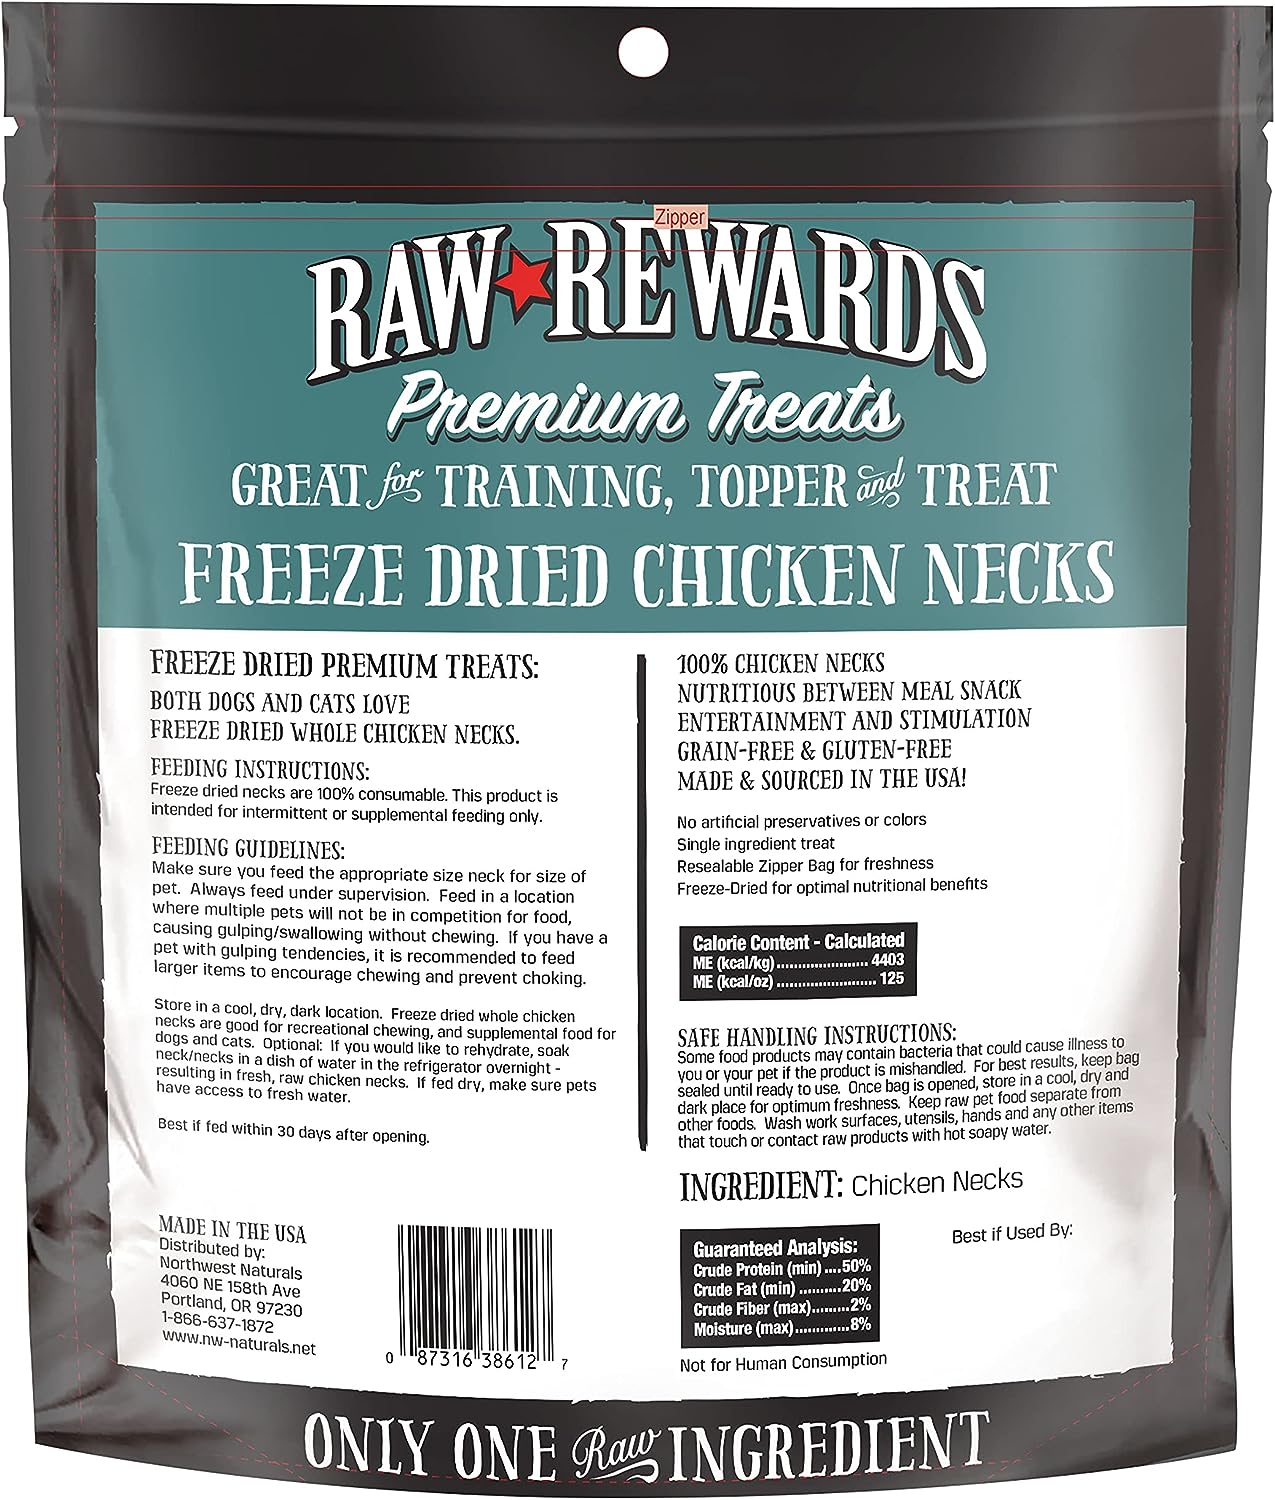 Northwest Naturals Freeze-Dried Chicken Necks